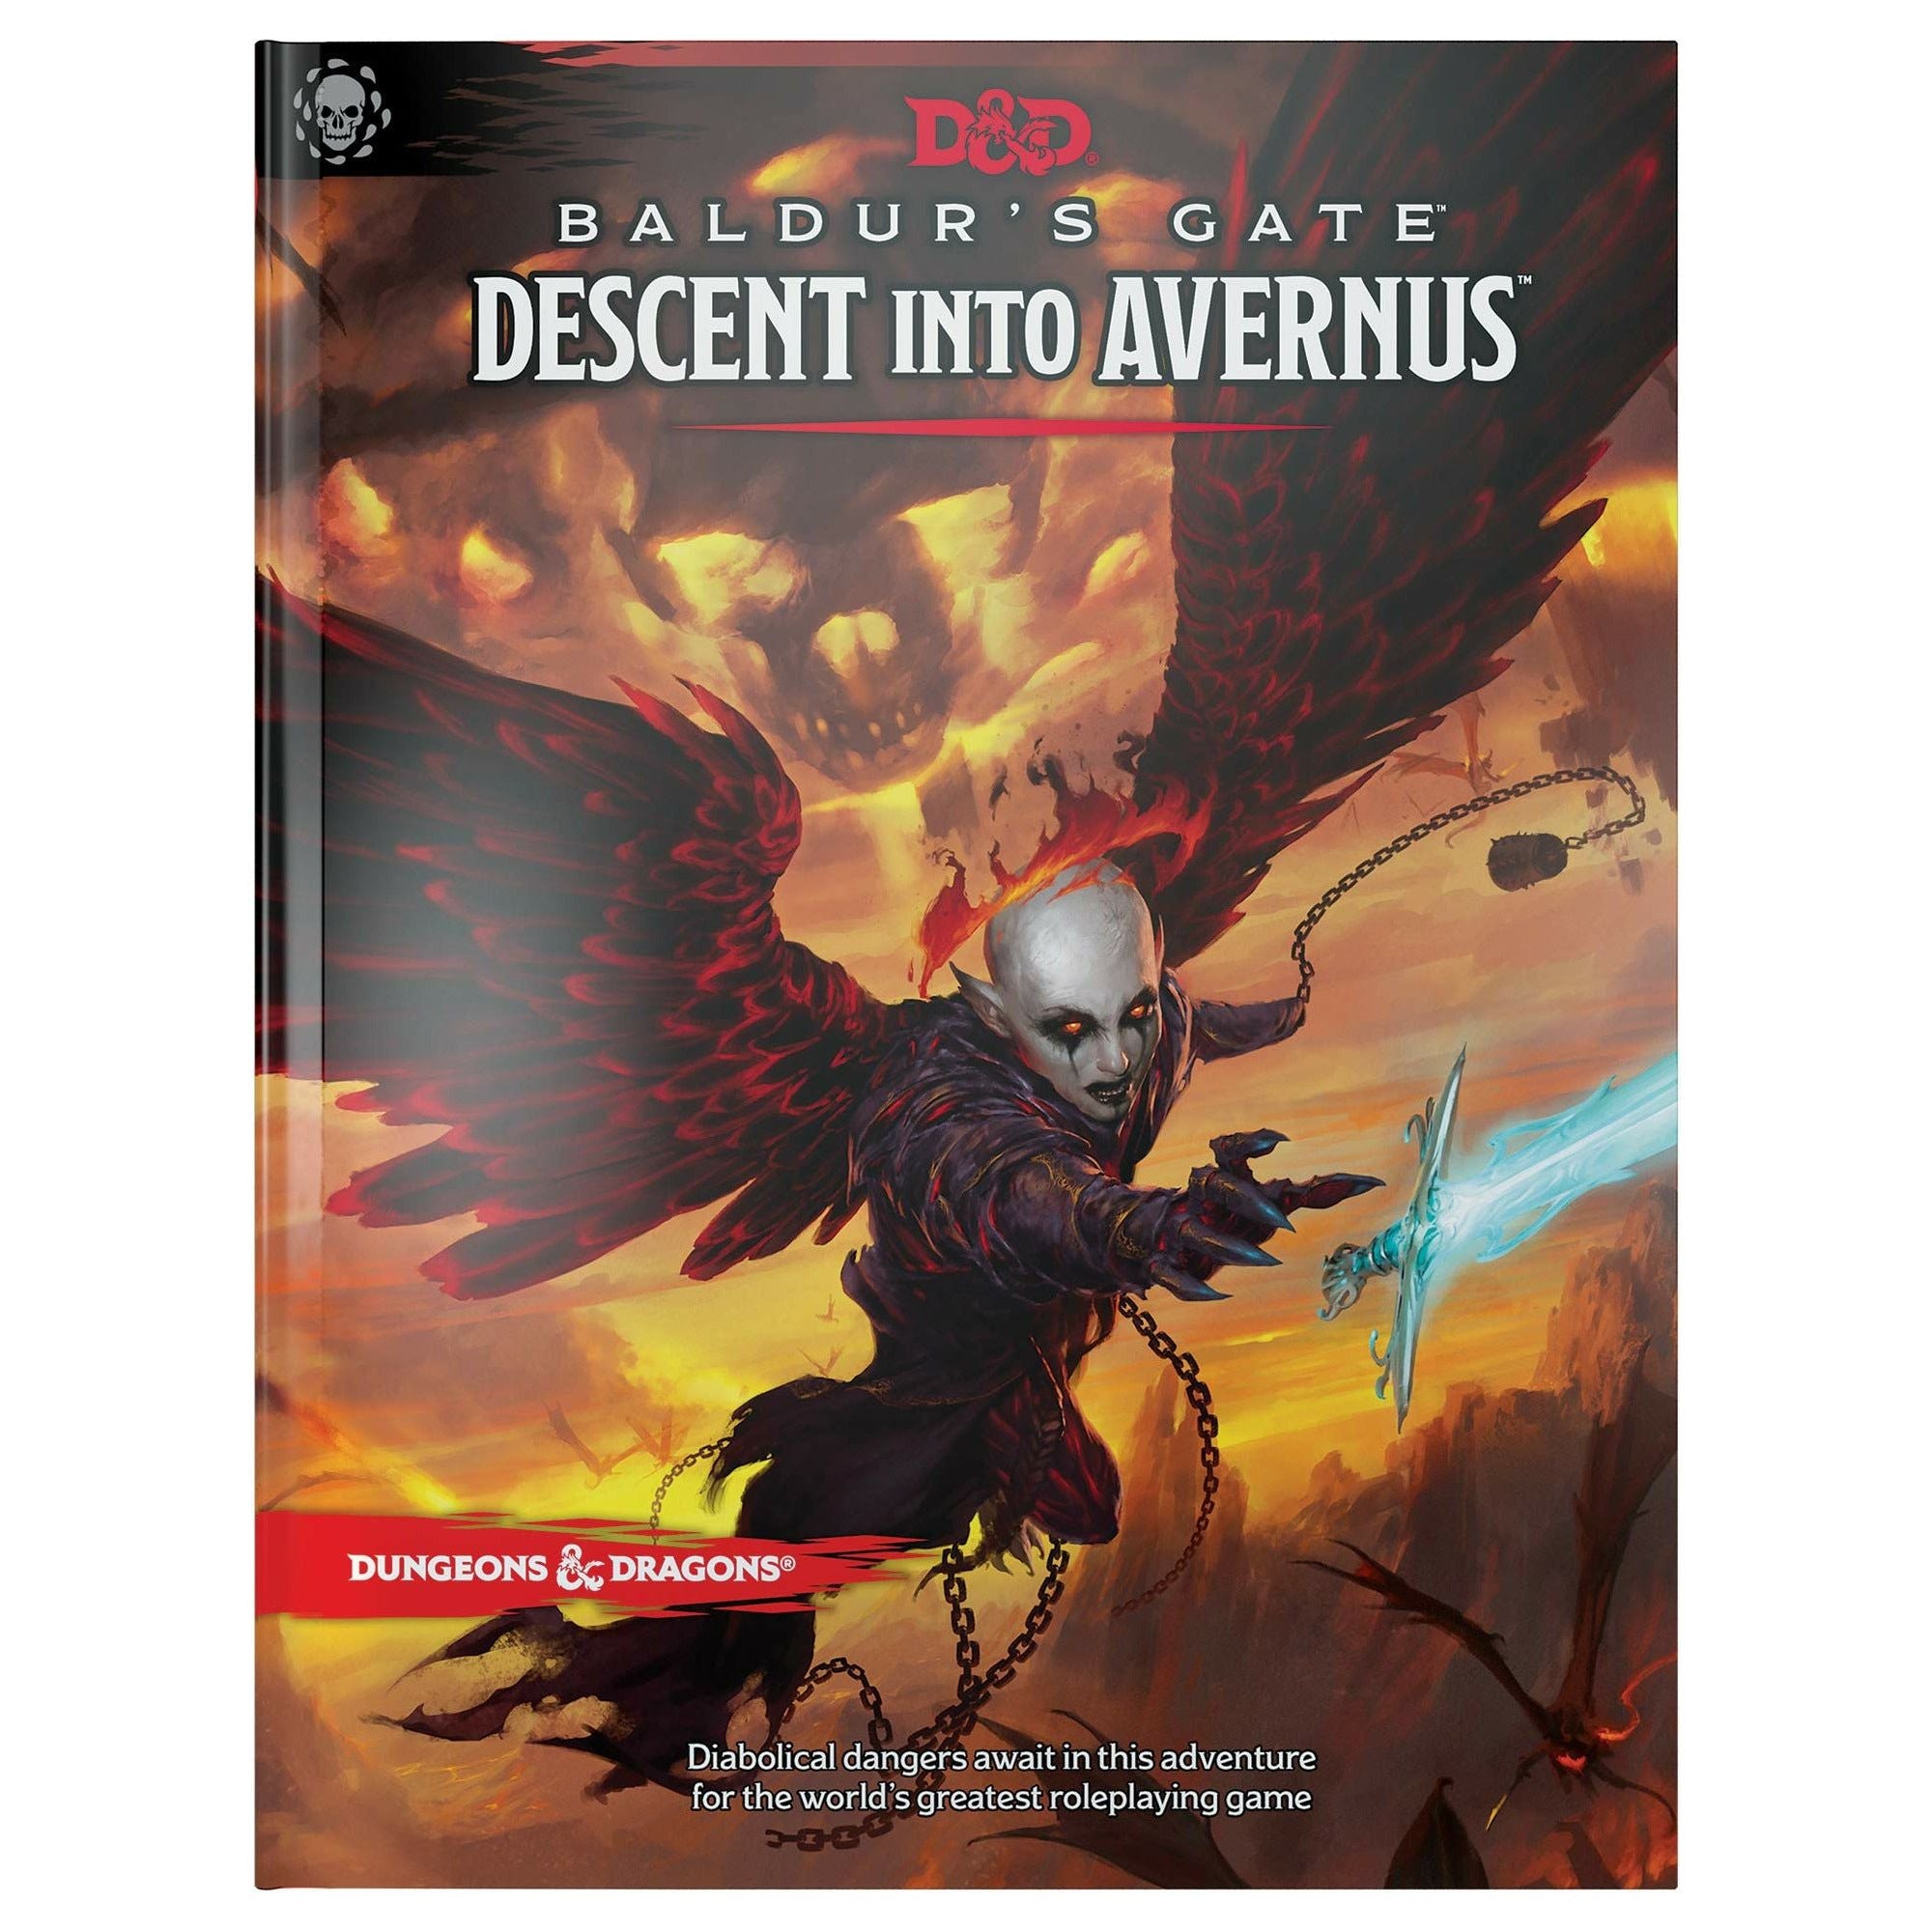 D&D - Baldur's Gate - Descent into Avernus